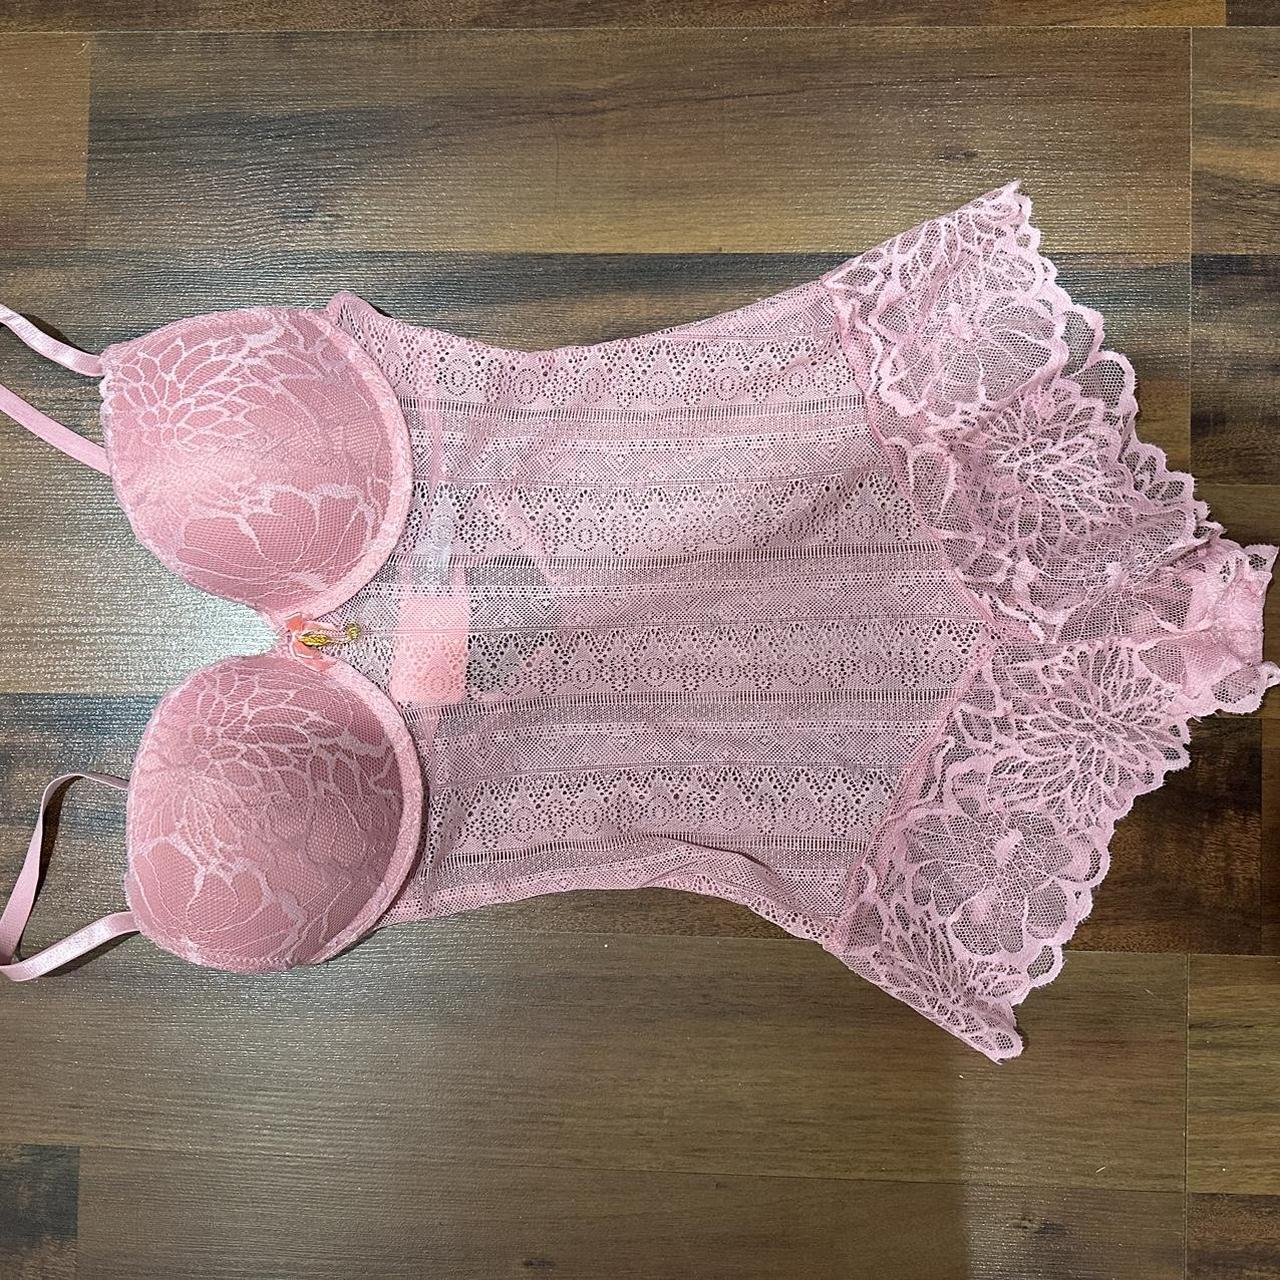 pink lingerie body suit - Depop